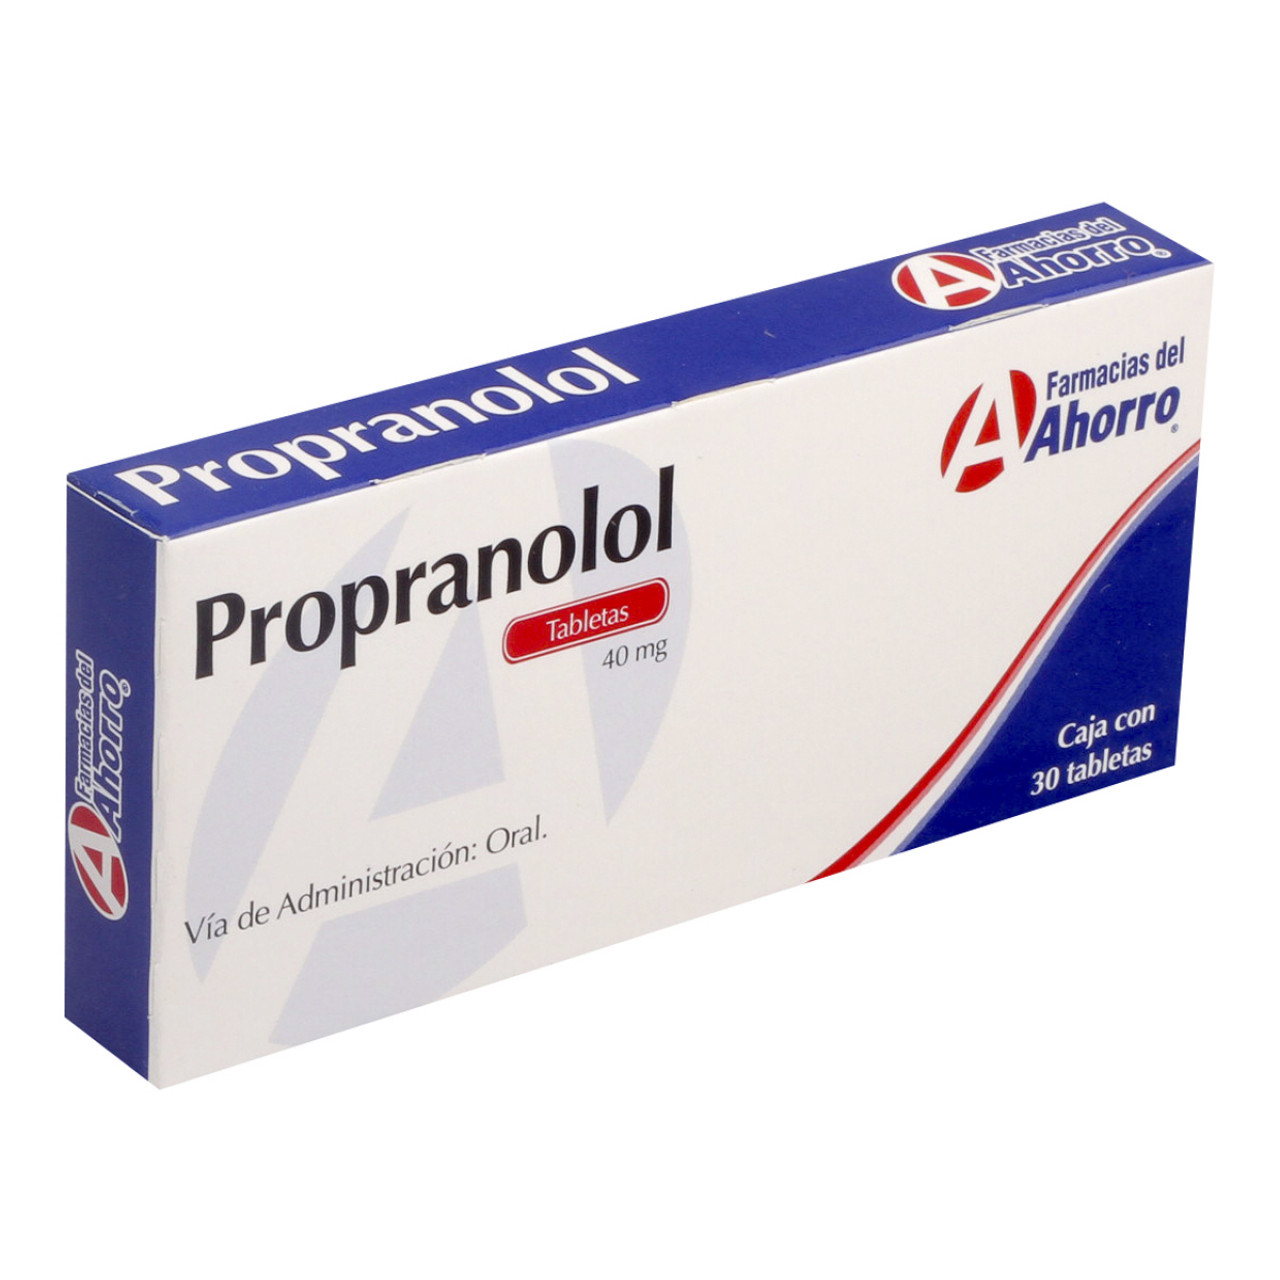 Propranolol: ¿Qué es y cuánto cuesta?